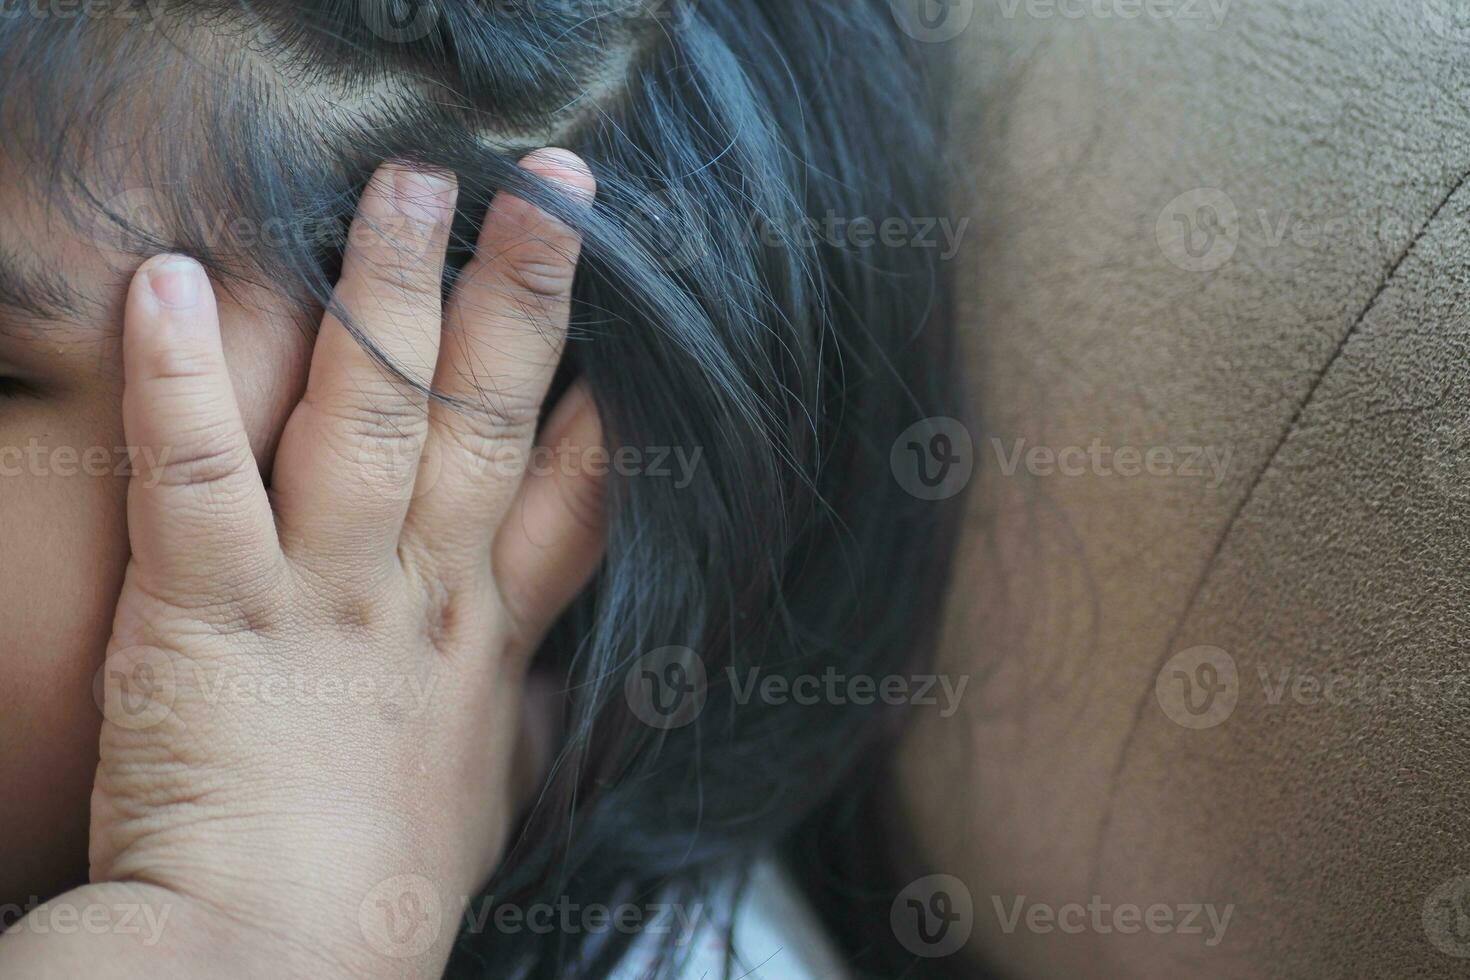 bambino avendo orecchio dolore toccante il suo doloroso orecchio , foto